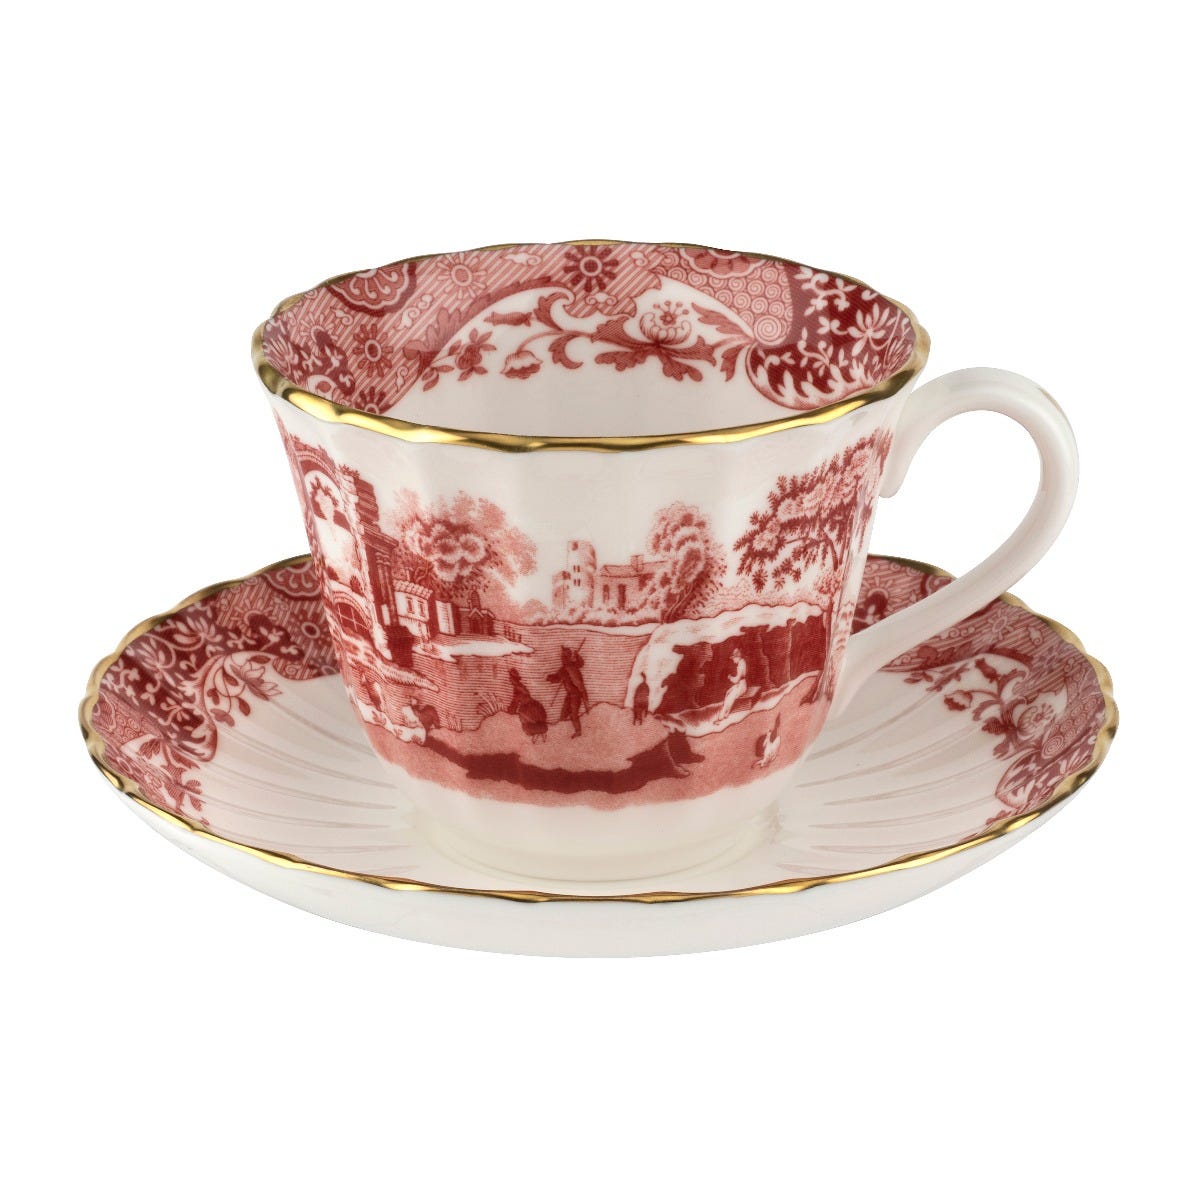 1770 Italian Teacup & Saucer, Cranberry, Spode